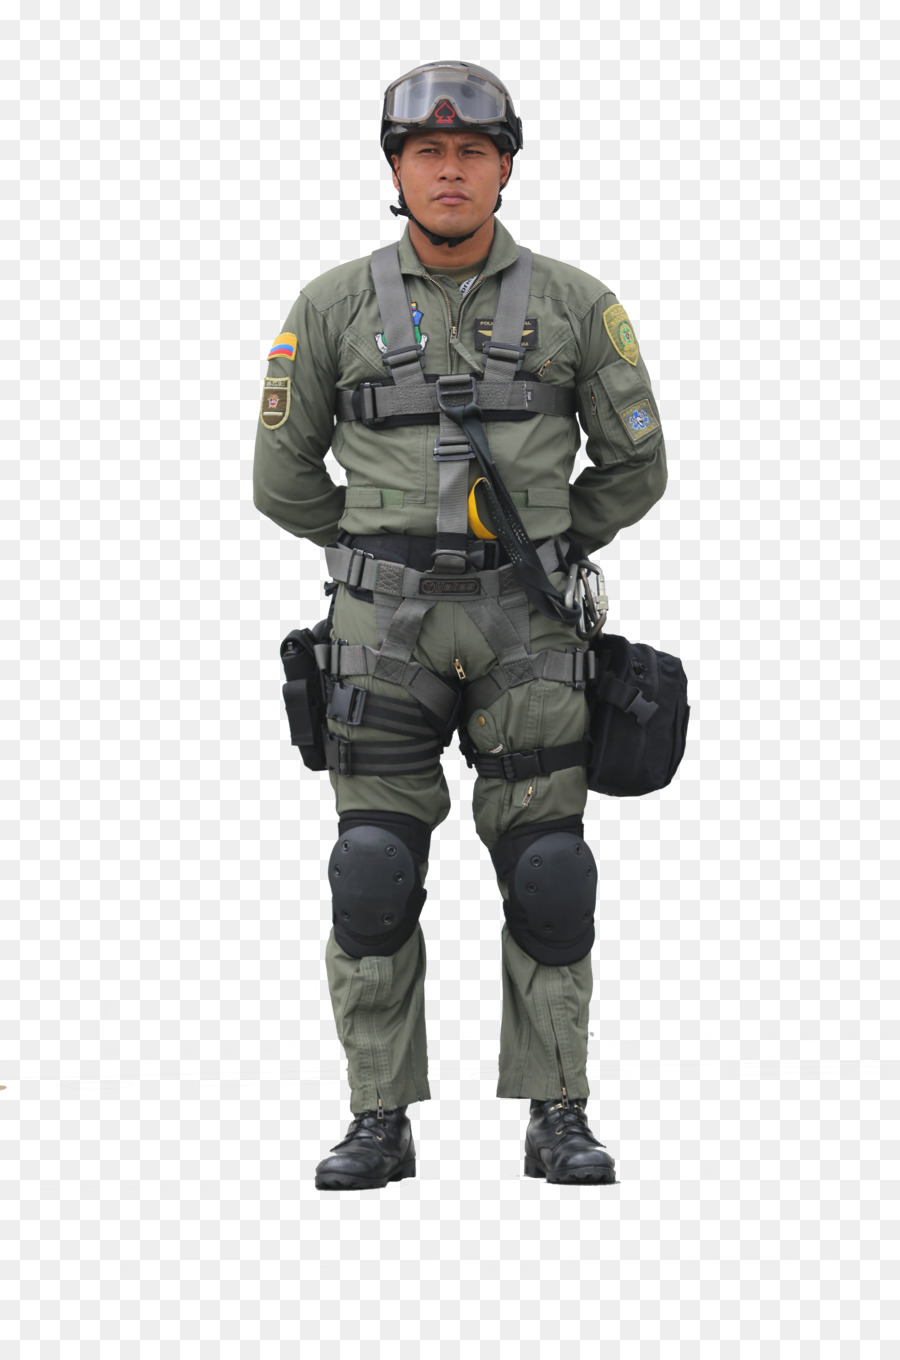 Soldato in uniforme Militare, della Polizia Nazionale della Colombia - soldato